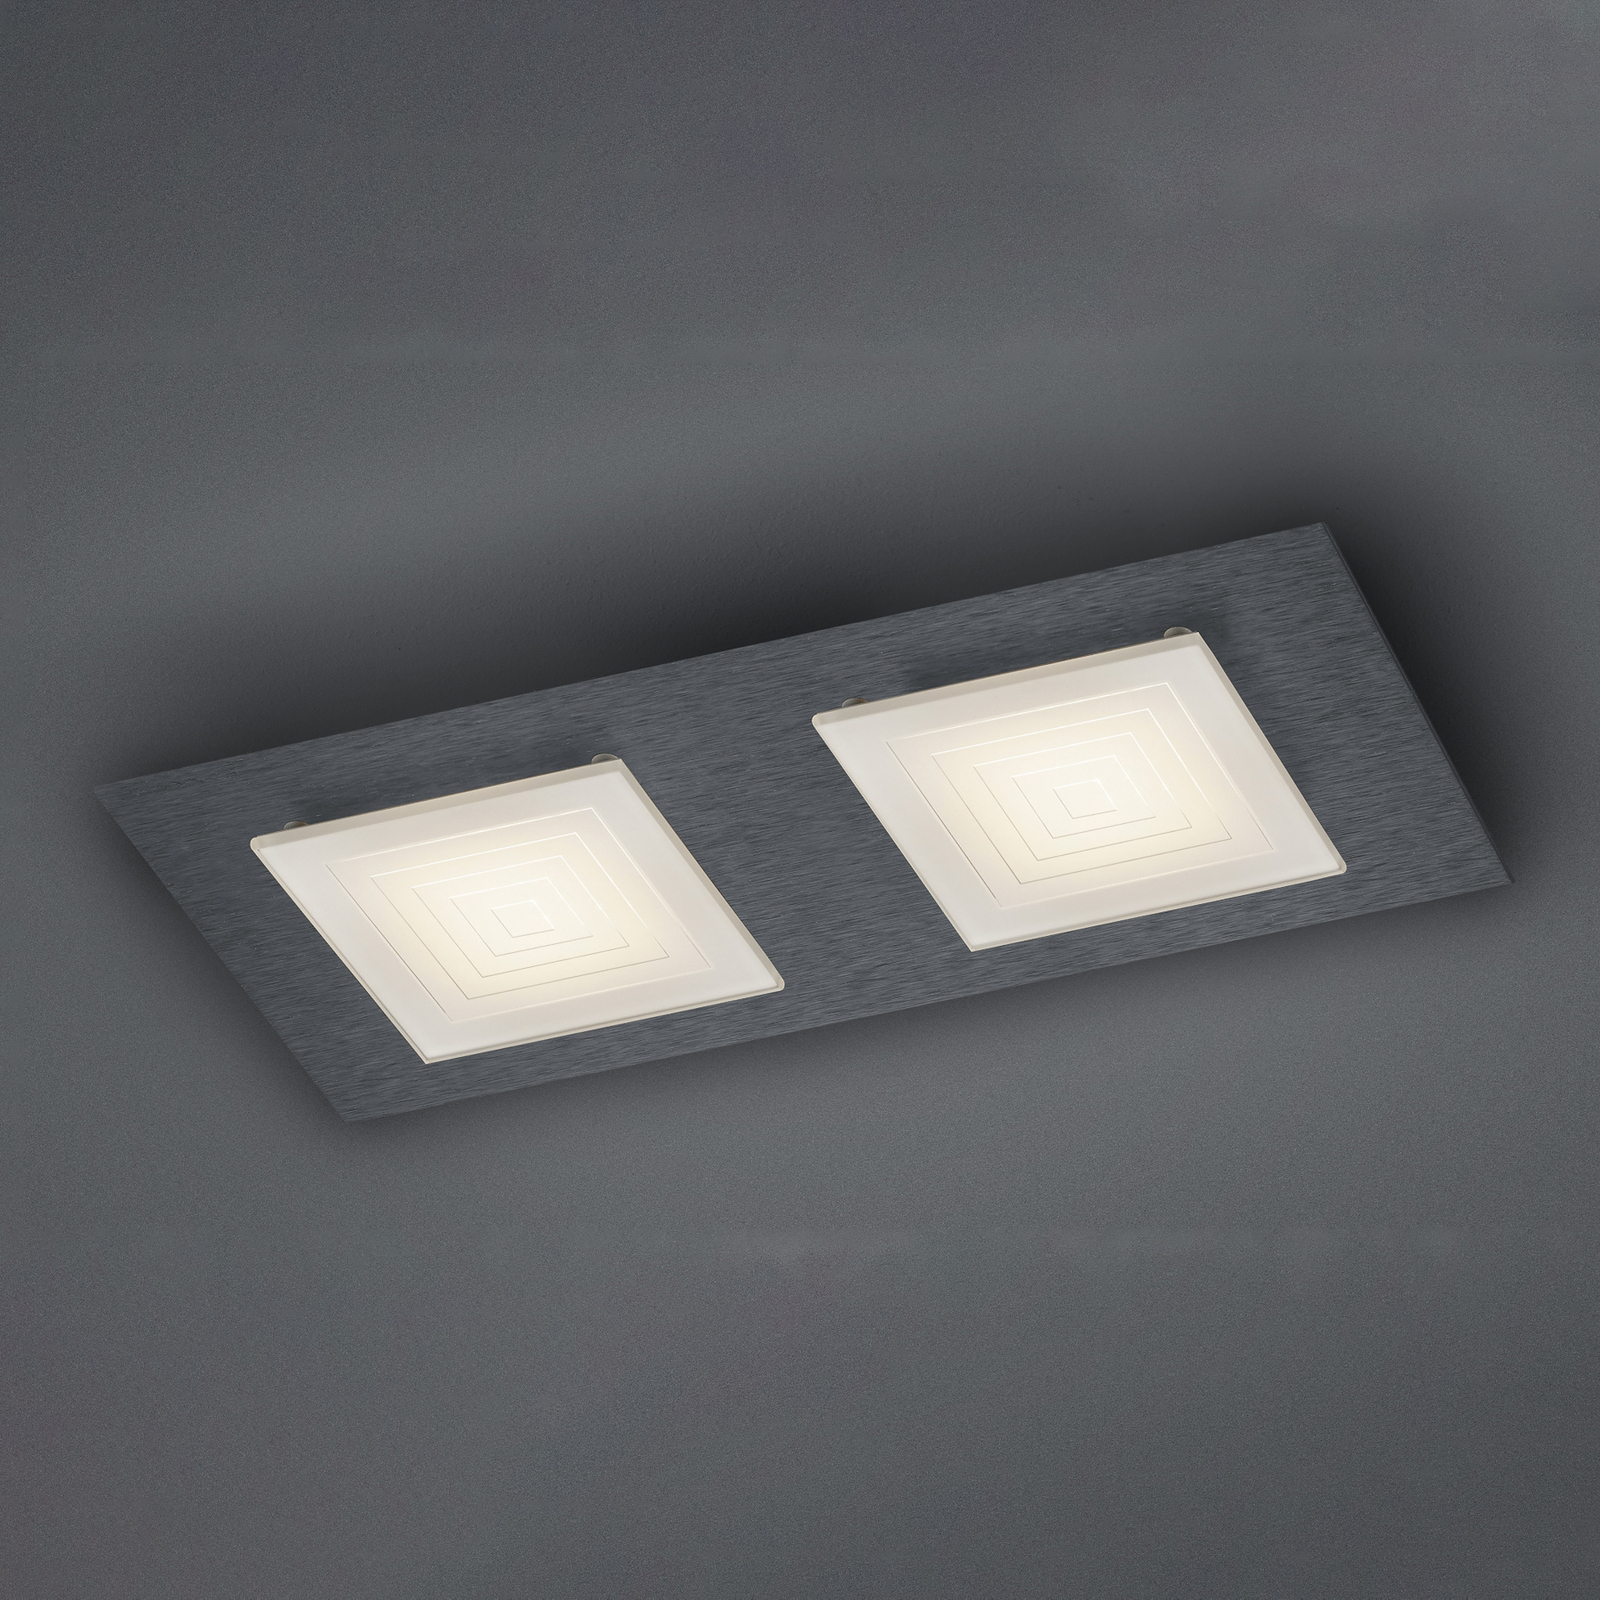 BANKAMP Ino LED ceiling light 2-bulb anthracite